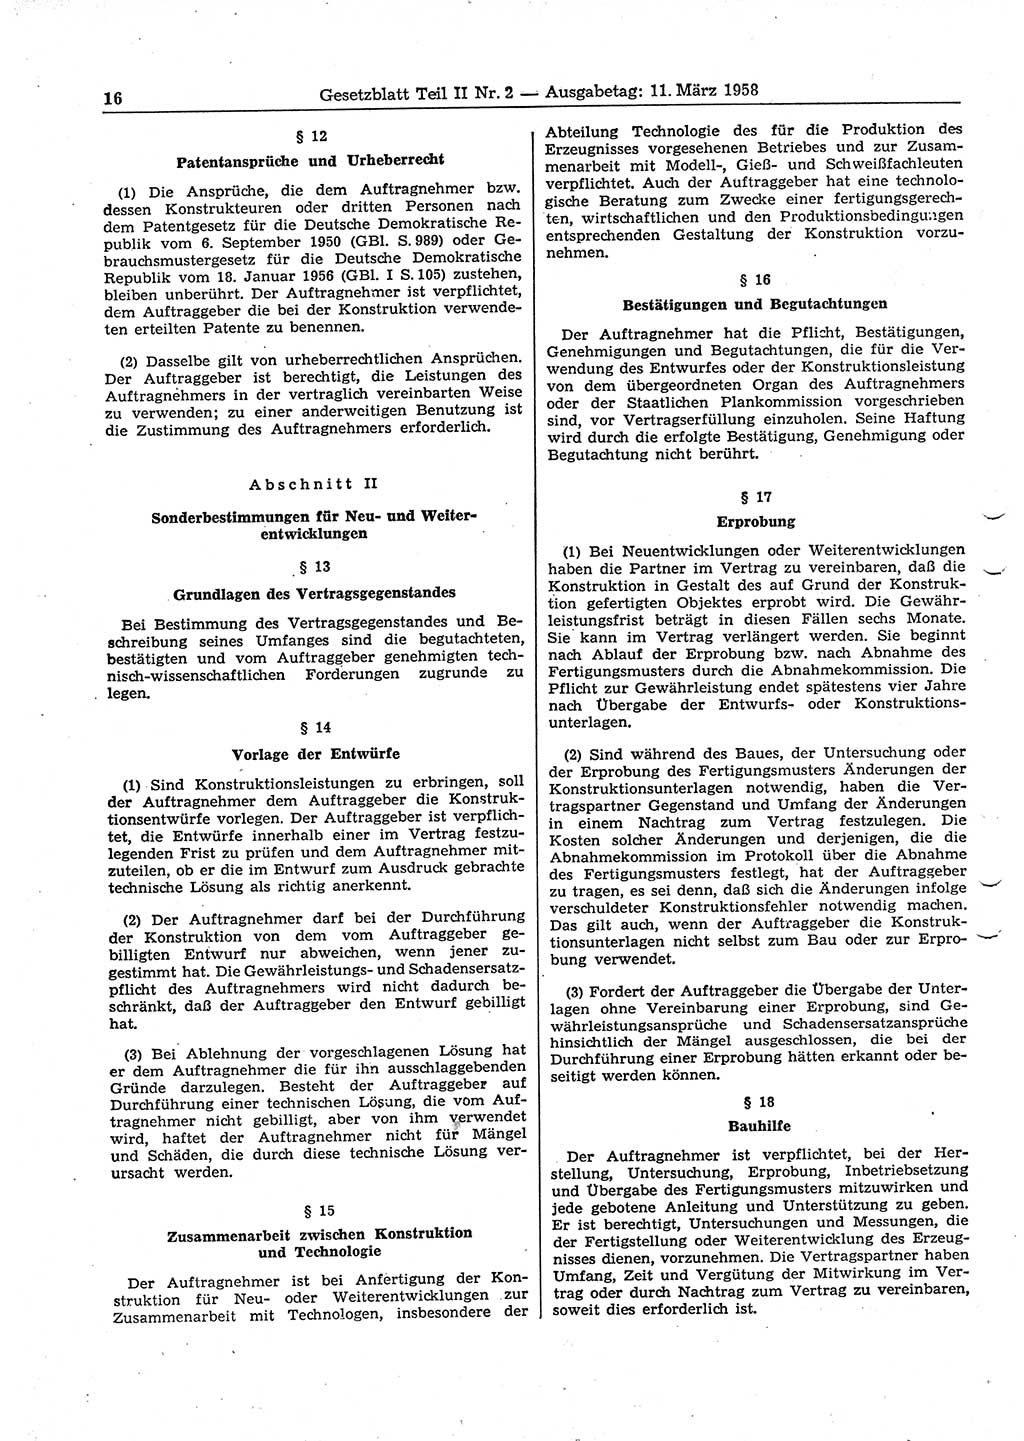 Gesetzblatt (GBl.) der Deutschen Demokratischen Republik (DDR) Teil ⅠⅠ 1958, Seite 16 (GBl. DDR ⅠⅠ 1958, S. 16)